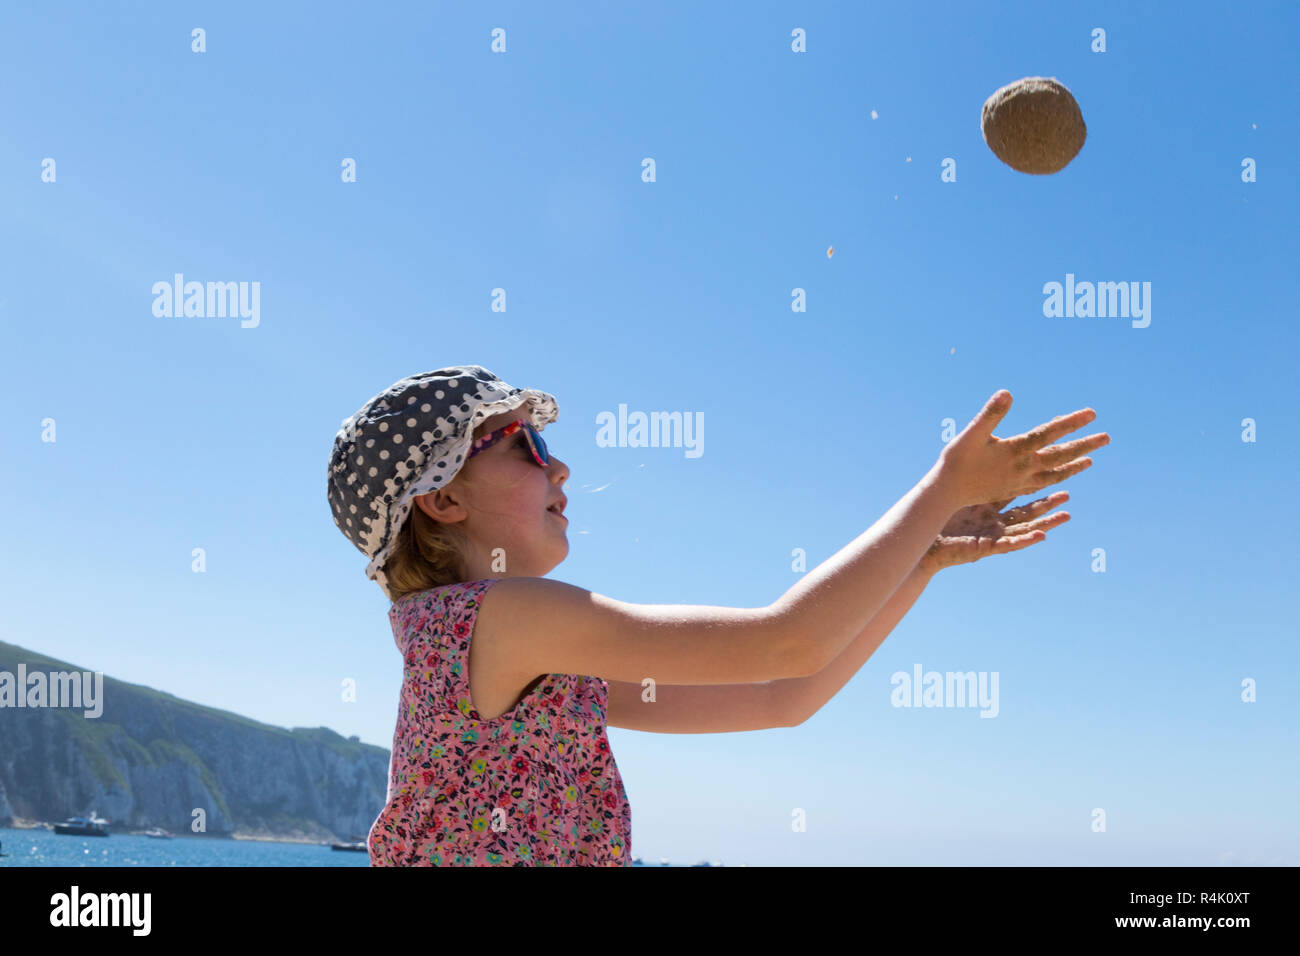 Niña de 8 años / 8 años, jugando a tirar una bola de arena / juega en la  playa en Alum Bay en la Isla de Wight, Reino Unido. Llevar sombrero y